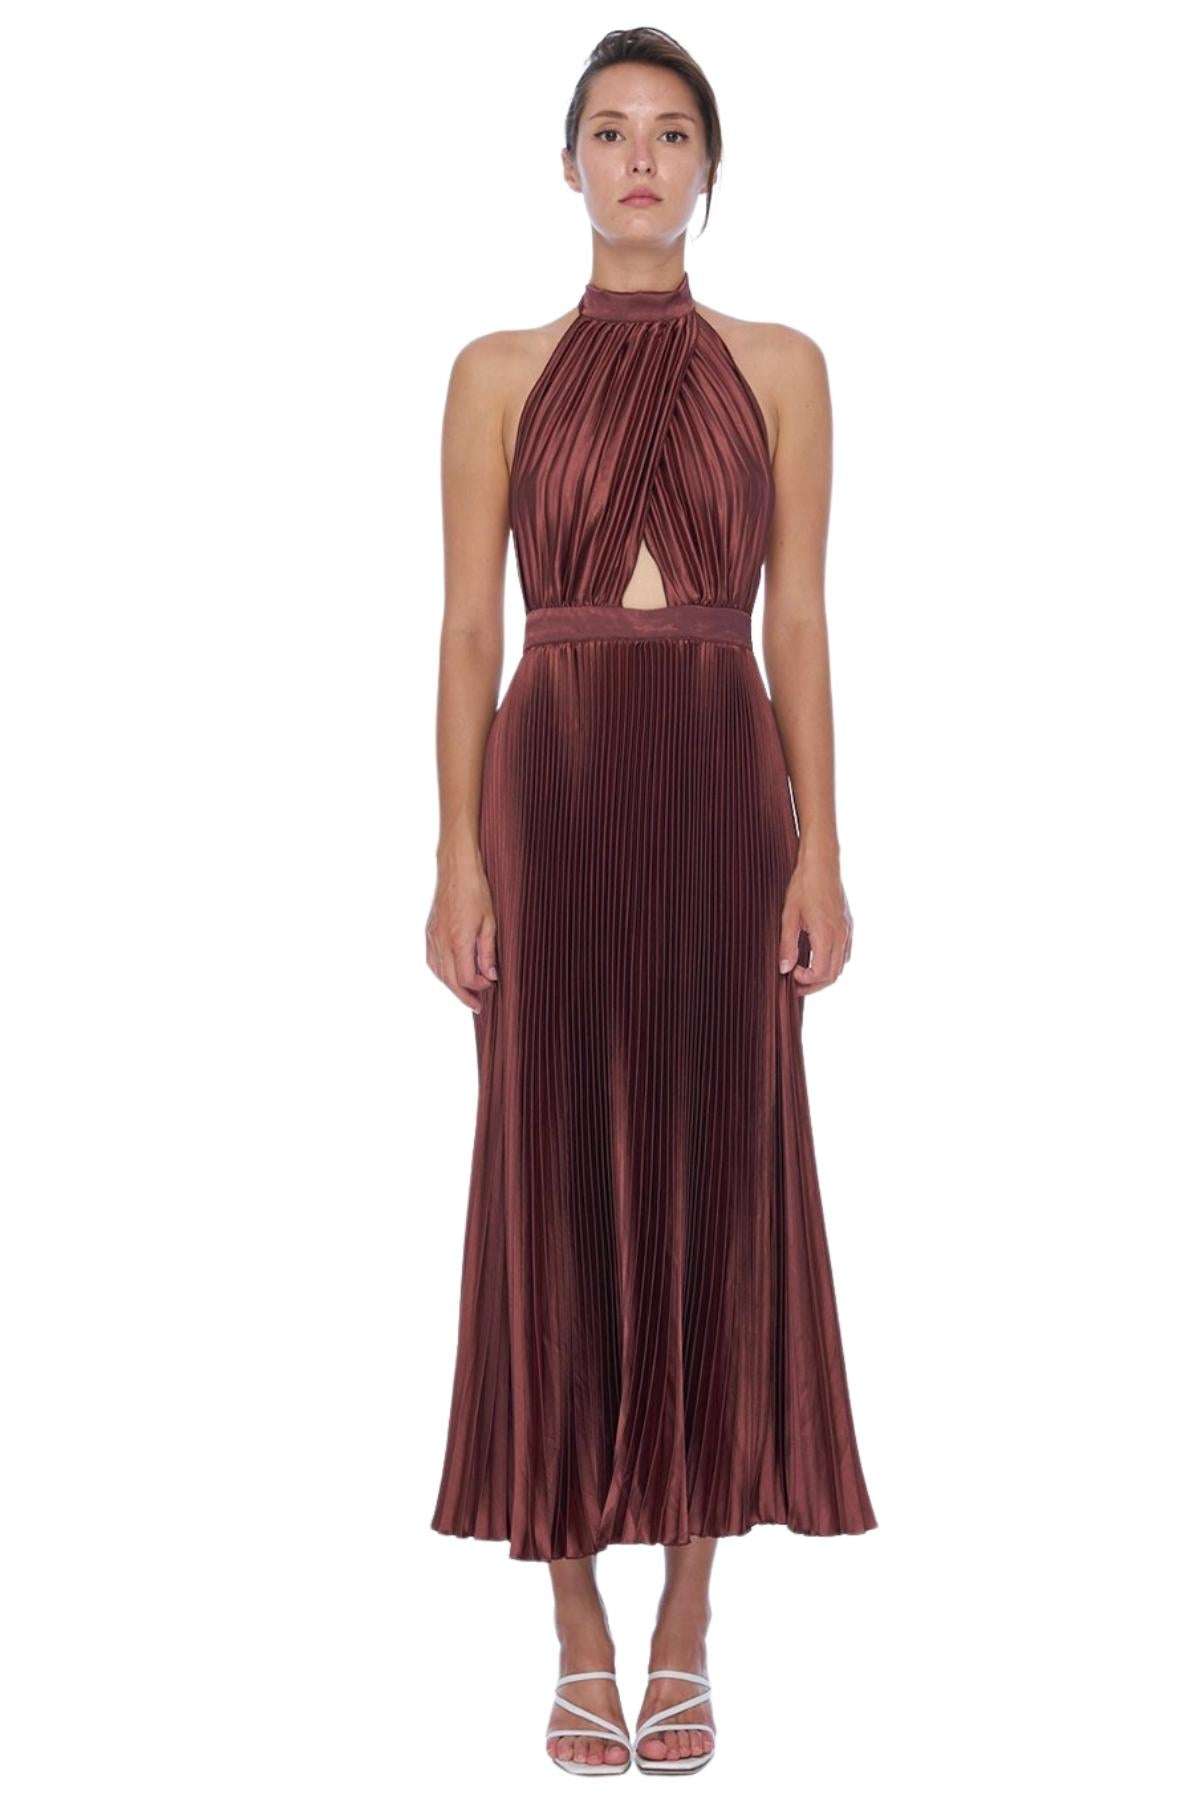 L'Idee L'IDEE Renaissance Gown (Chocolate) - RRP $349 - lidee-renaissance-gown-chocolate---rrp-9-dress-for-a-night-30754781.jpg